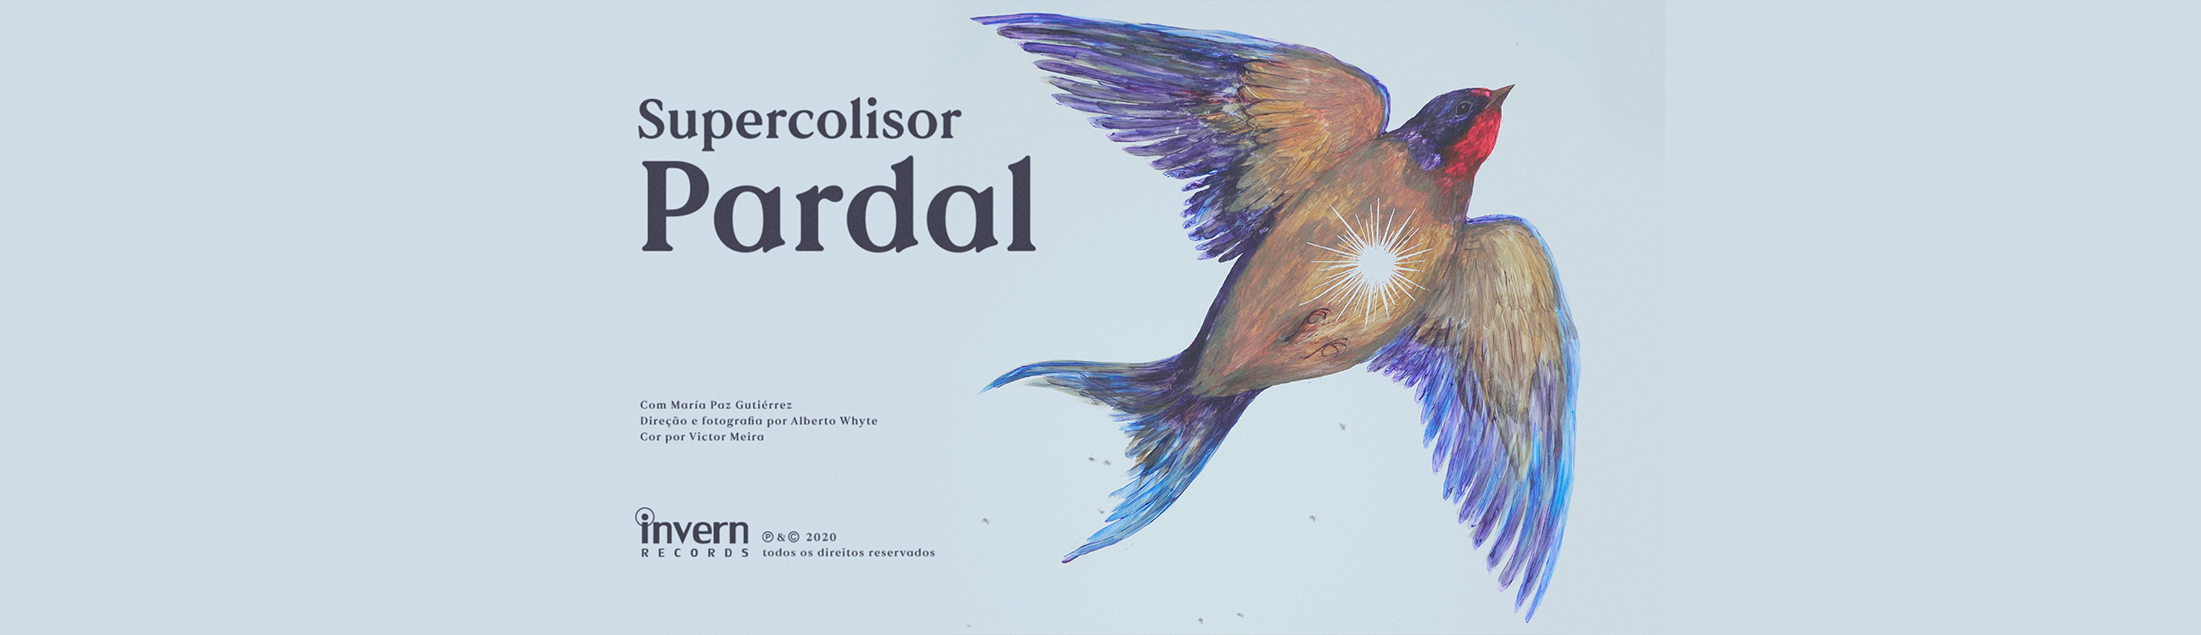 Supercolisor lança clipe 'Pardal' com participação da pintora chilena MaPa